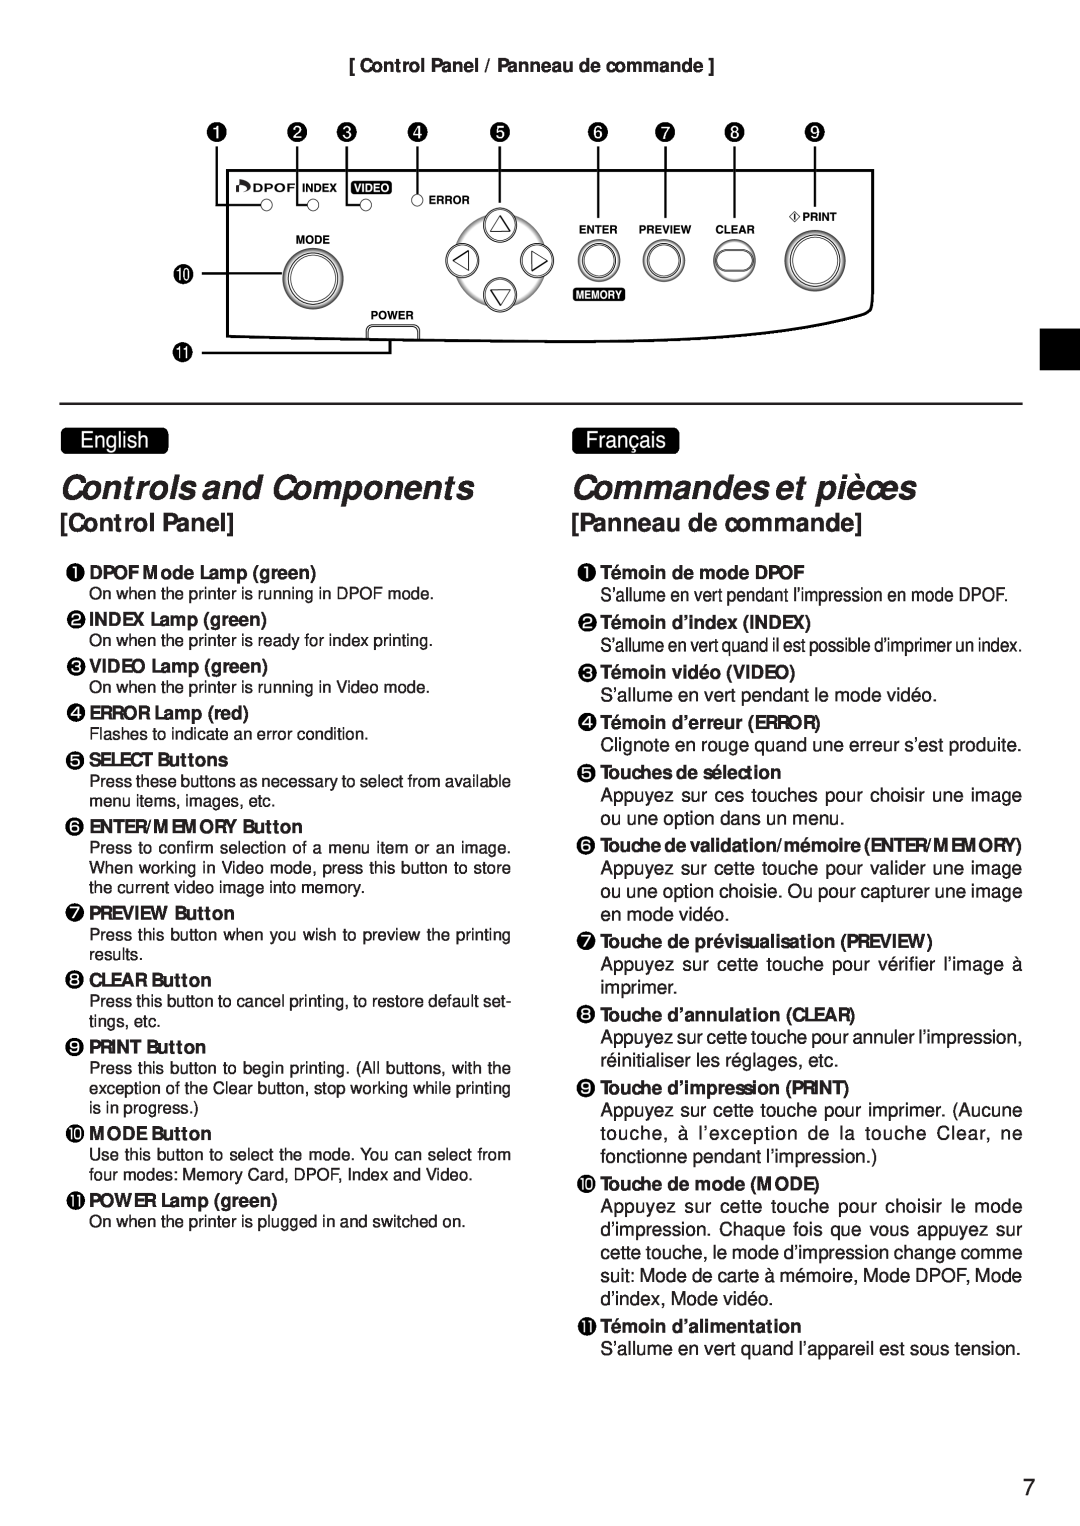 Canon CD-300 manual Controls and Components, Commandes et pièces, Control Panel, Panneau de commande, DPOF Mode Lamp green 